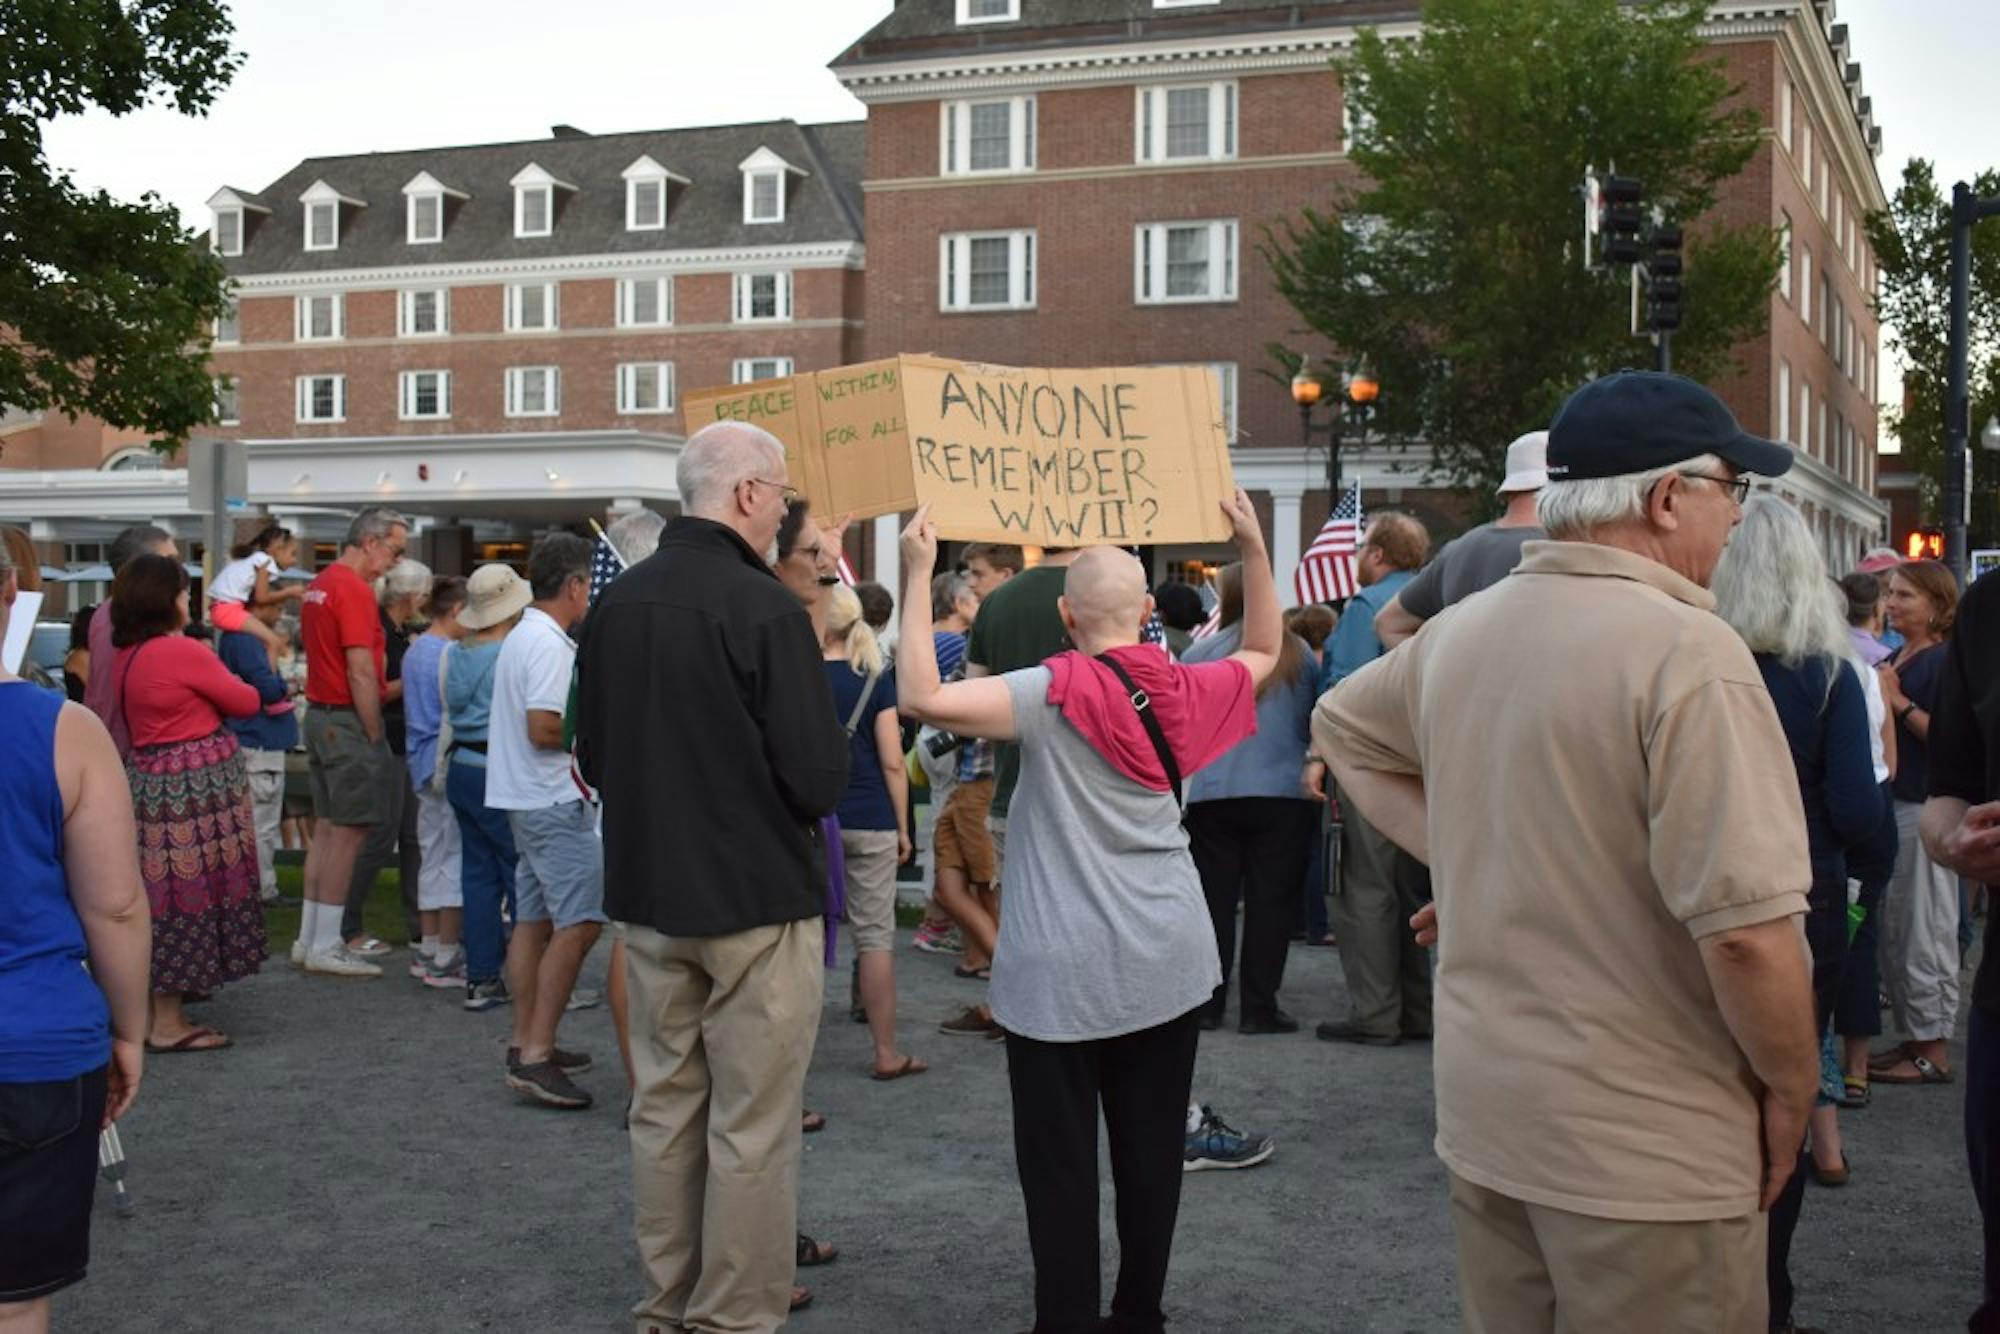 Demonstrators gathered across the street from the Hanover Inn.